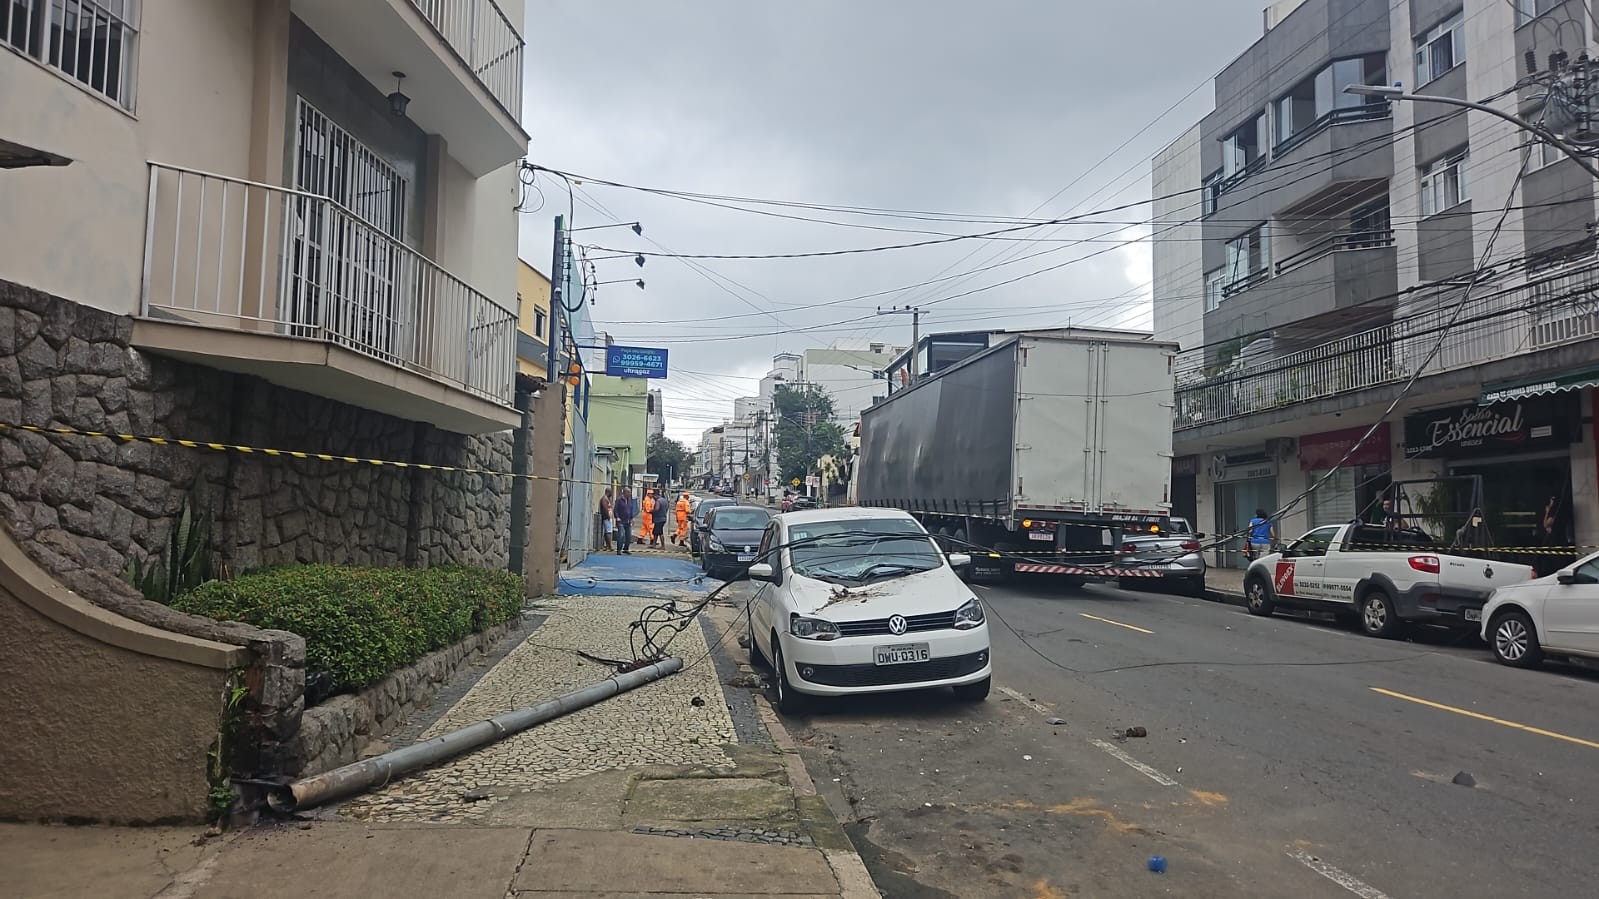 Caminhão arrasta cabos de energia e derruba poste na Avenida Olegário Maciel, em Juiz de Fora; VÍDEO